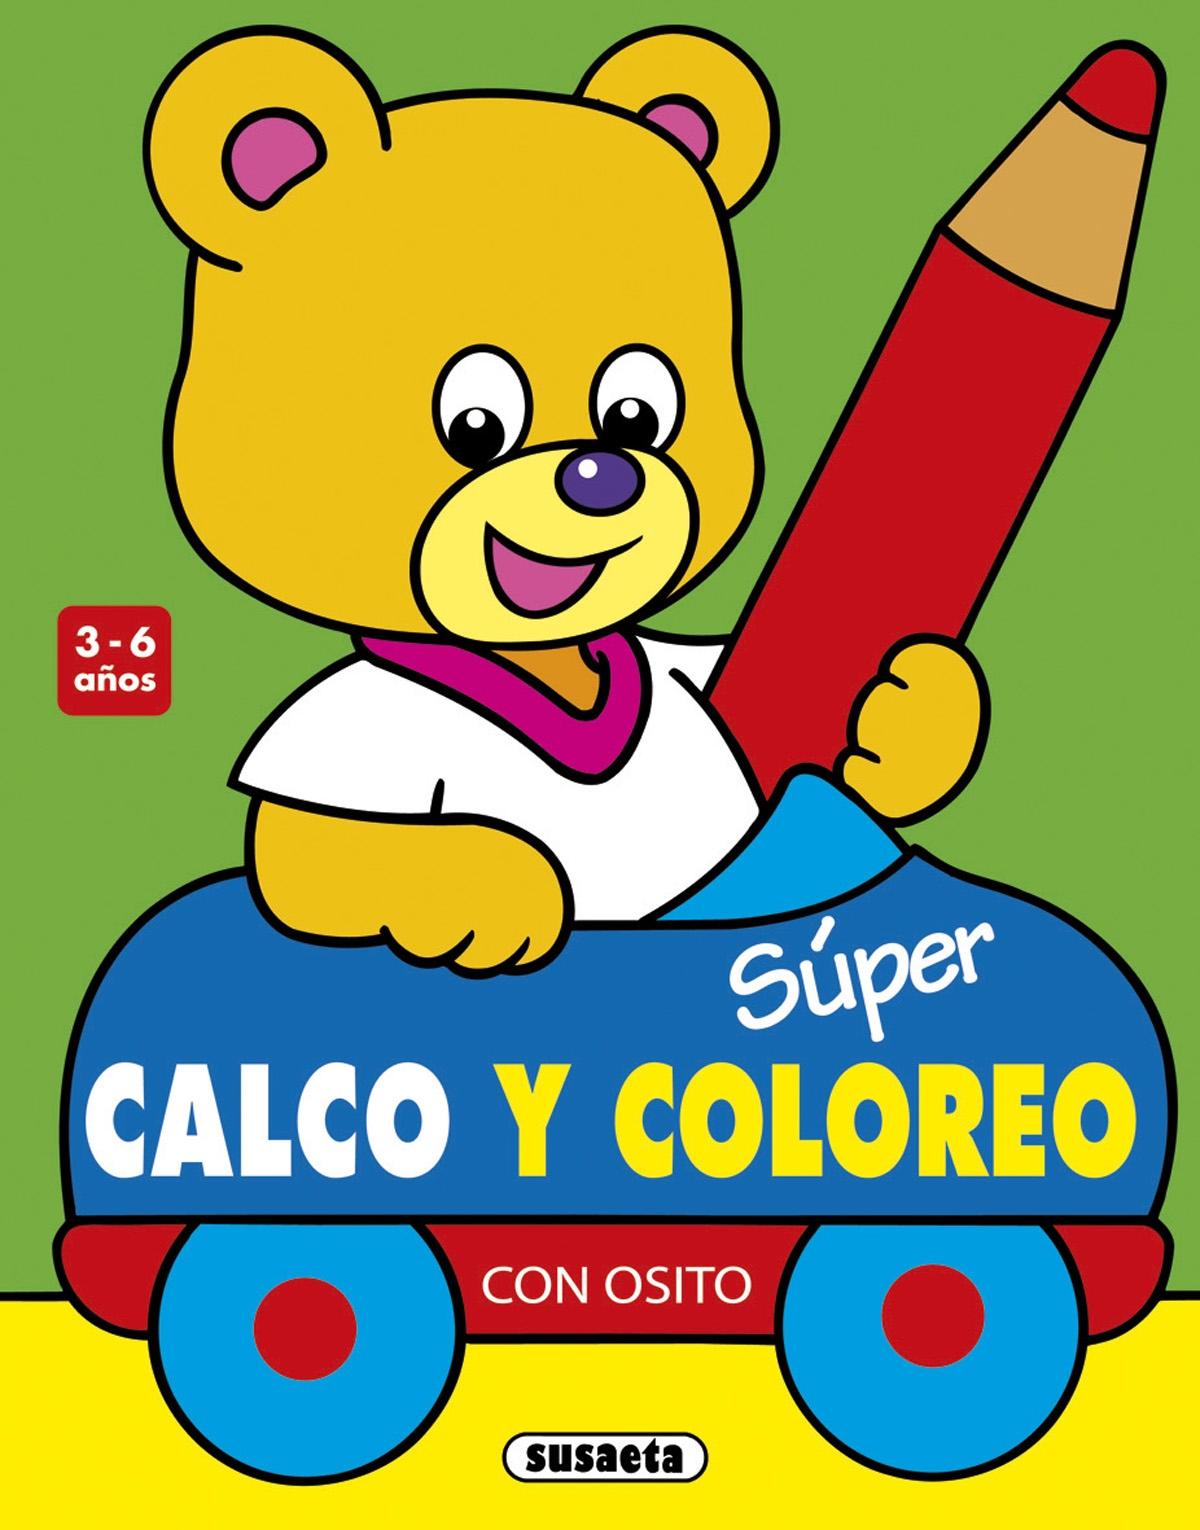 SUPER CALCO Y COLOREO CON OSITO